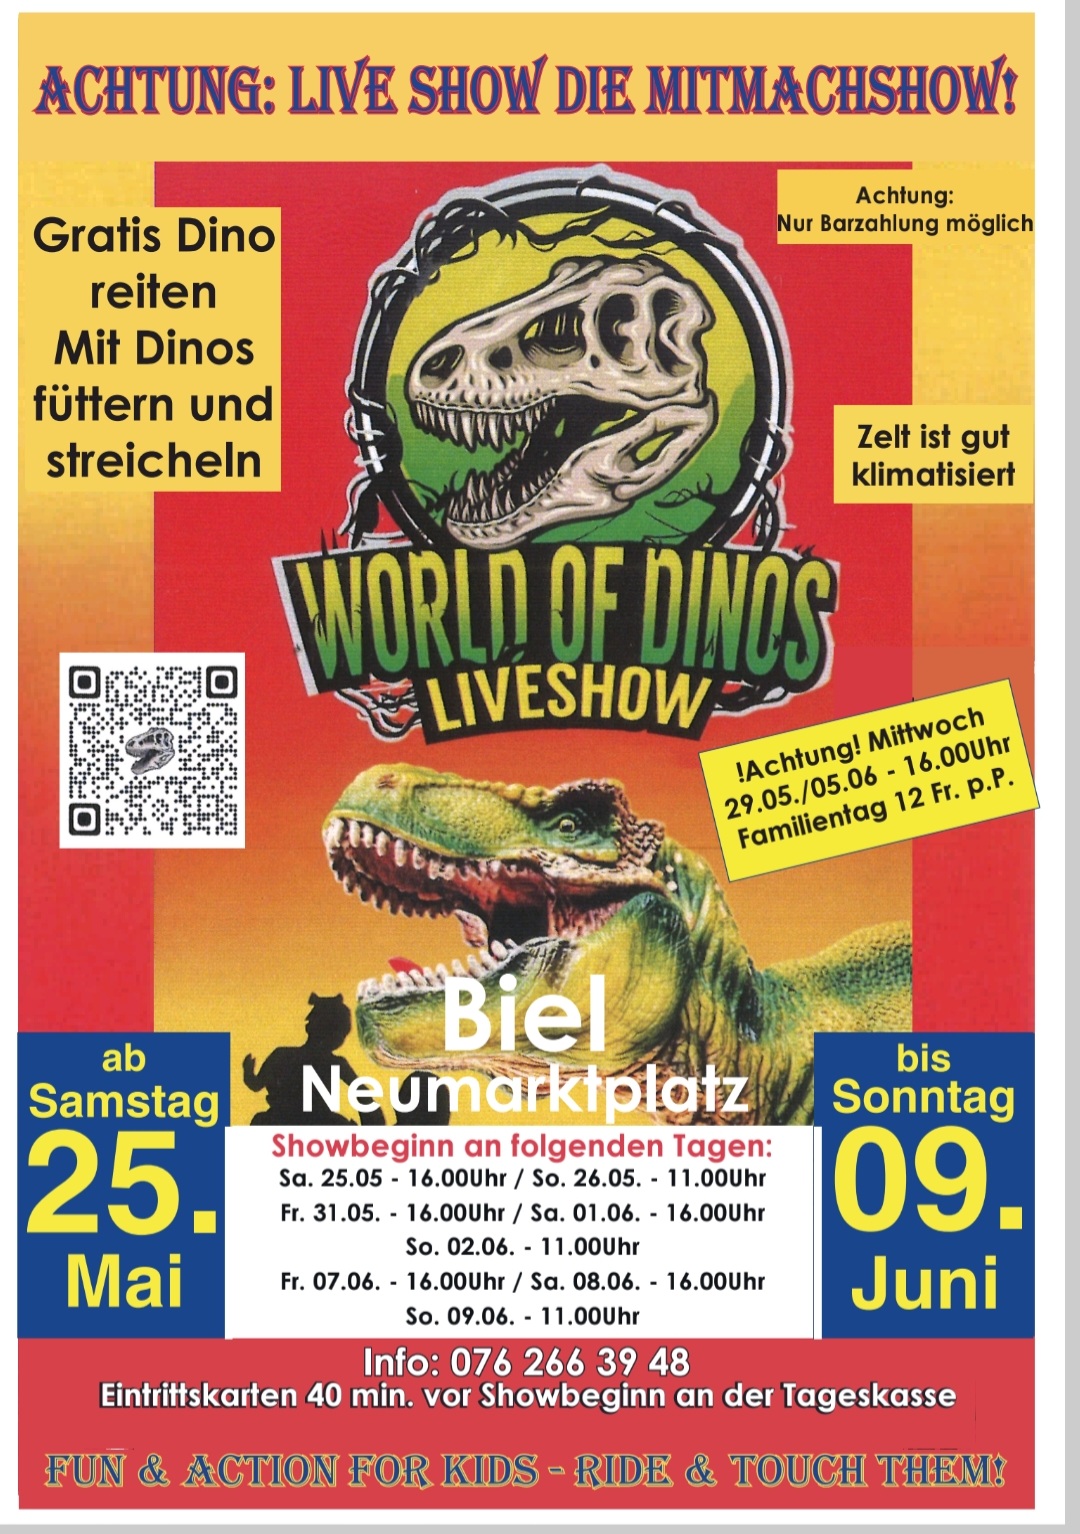 Vom Samstag 25. Mai bis Sonntag 9. Juni können Sie unsere Dinos live im Zelt erleben. Wo? In Biel am Neumarktplatz. Showzeiten Freitags und Samstags 16 Uhr, Sonntags um 11 Uhr